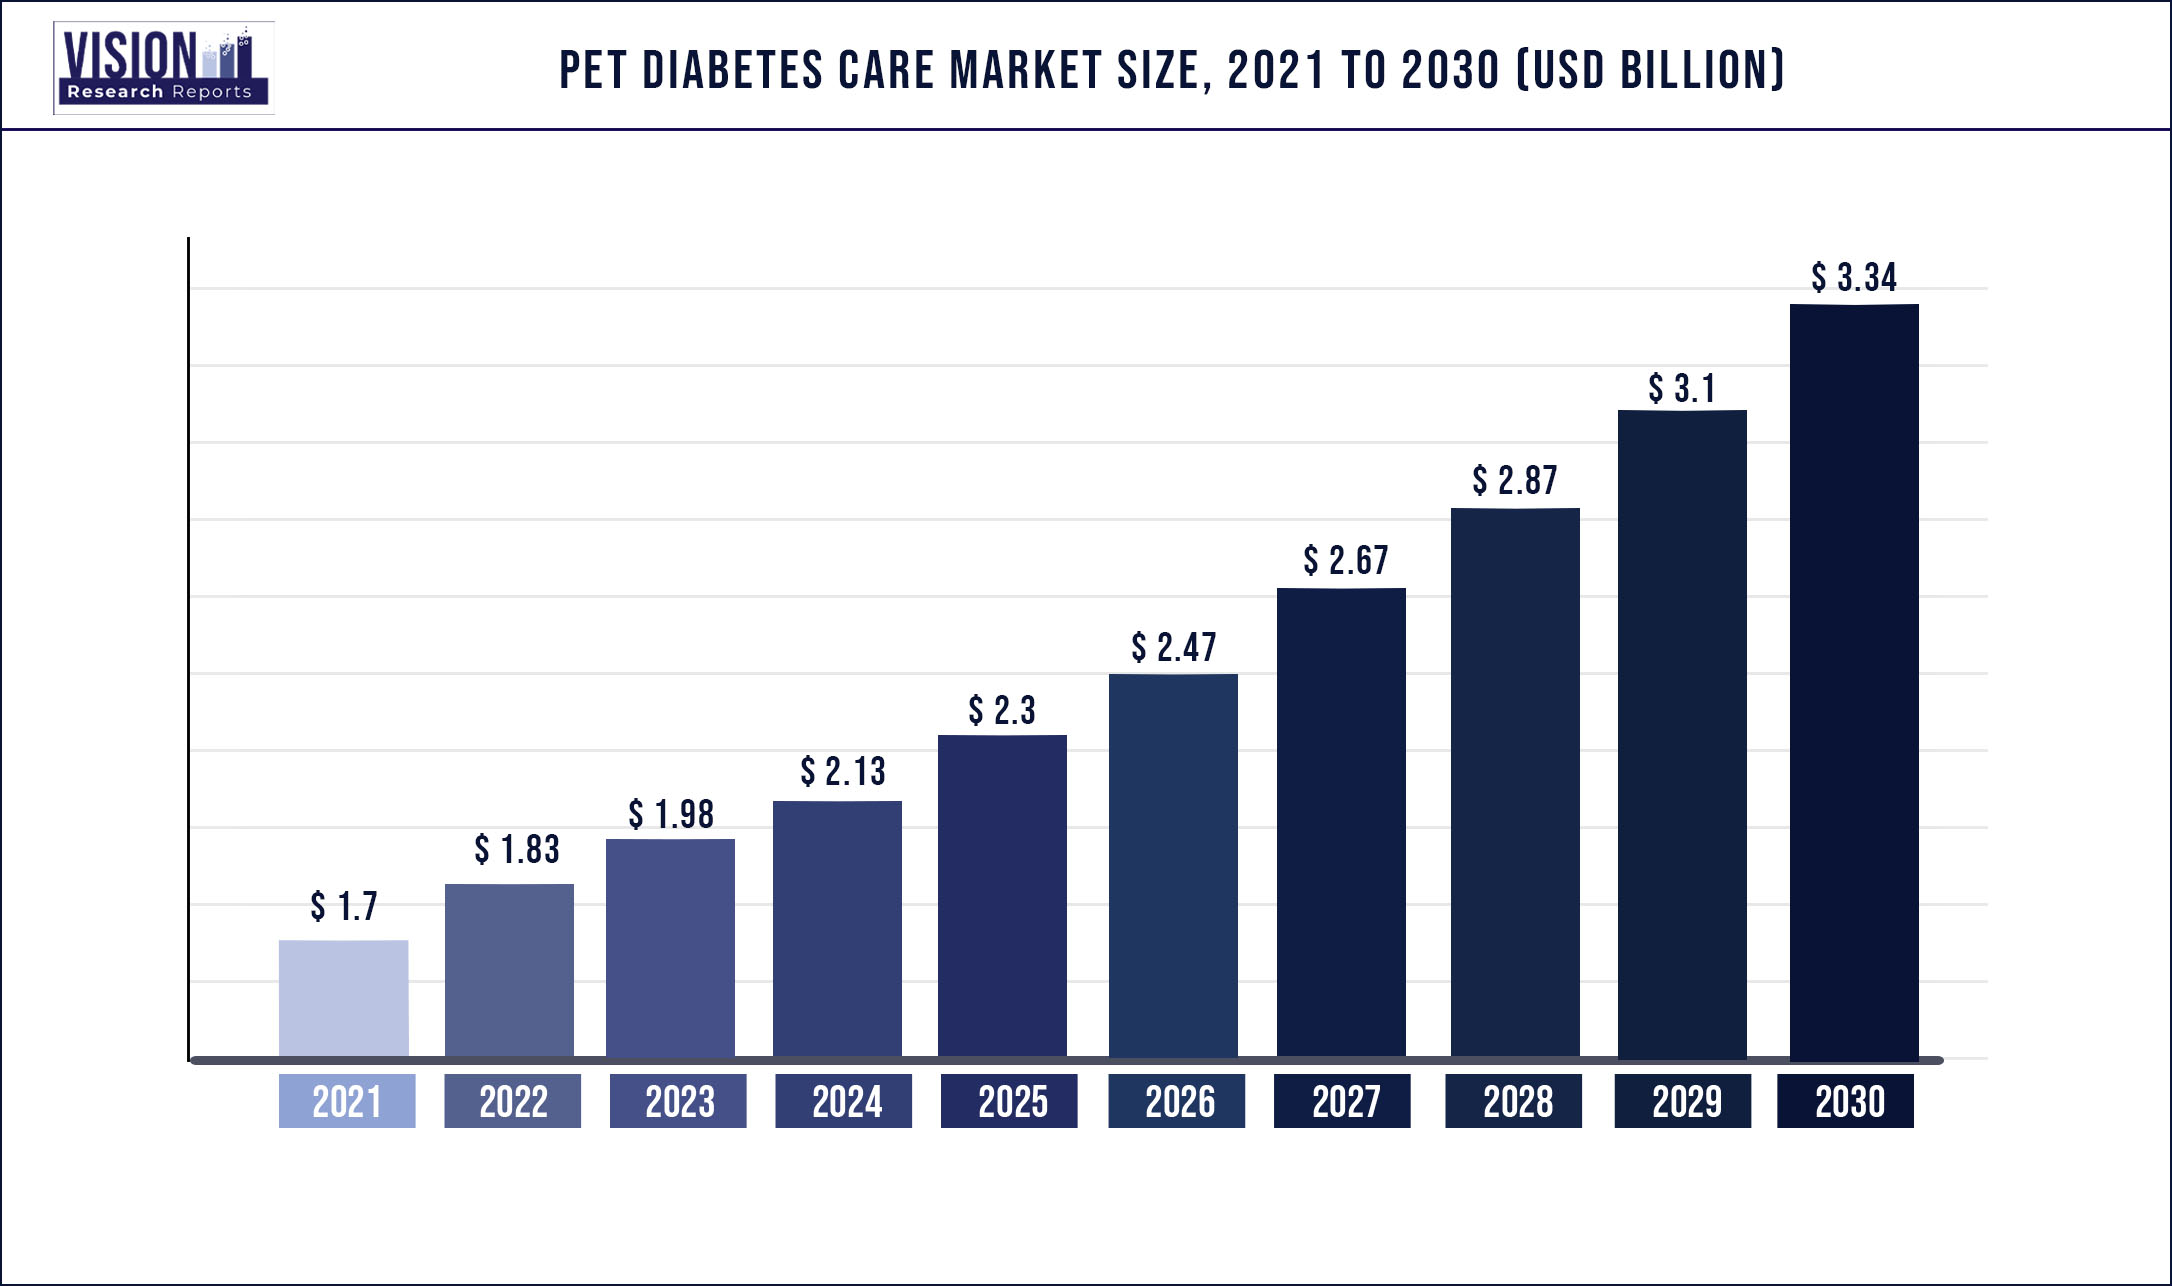 Pet Diabetes Care Market Size 2021 to 2030